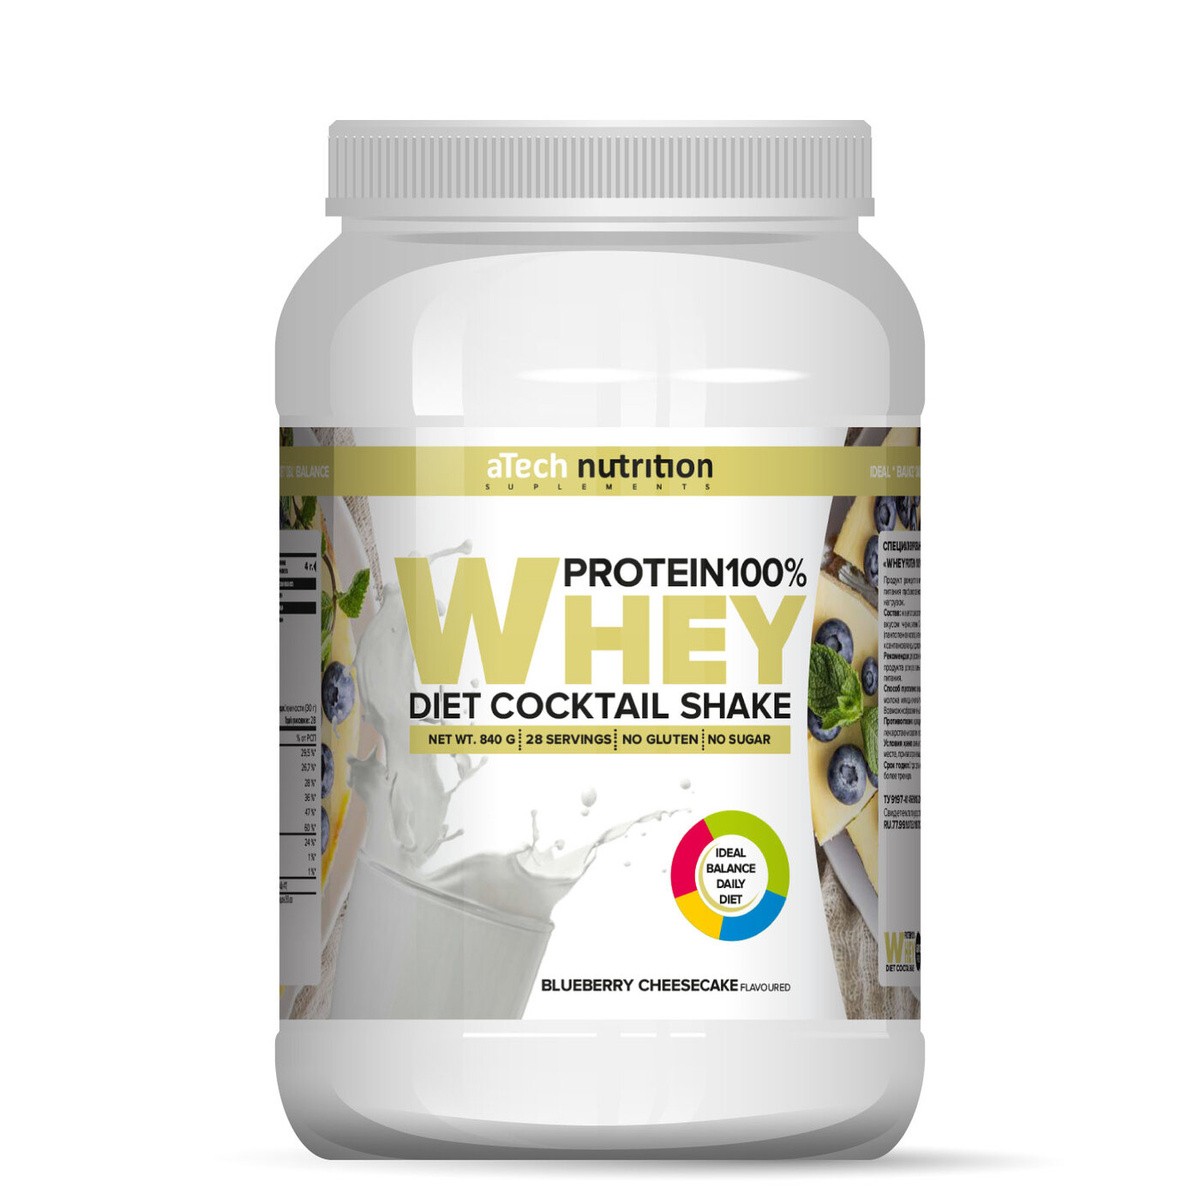 Протеин Whey Protein 100%, aTech Nutrition 840 гр., черничный чизкейк